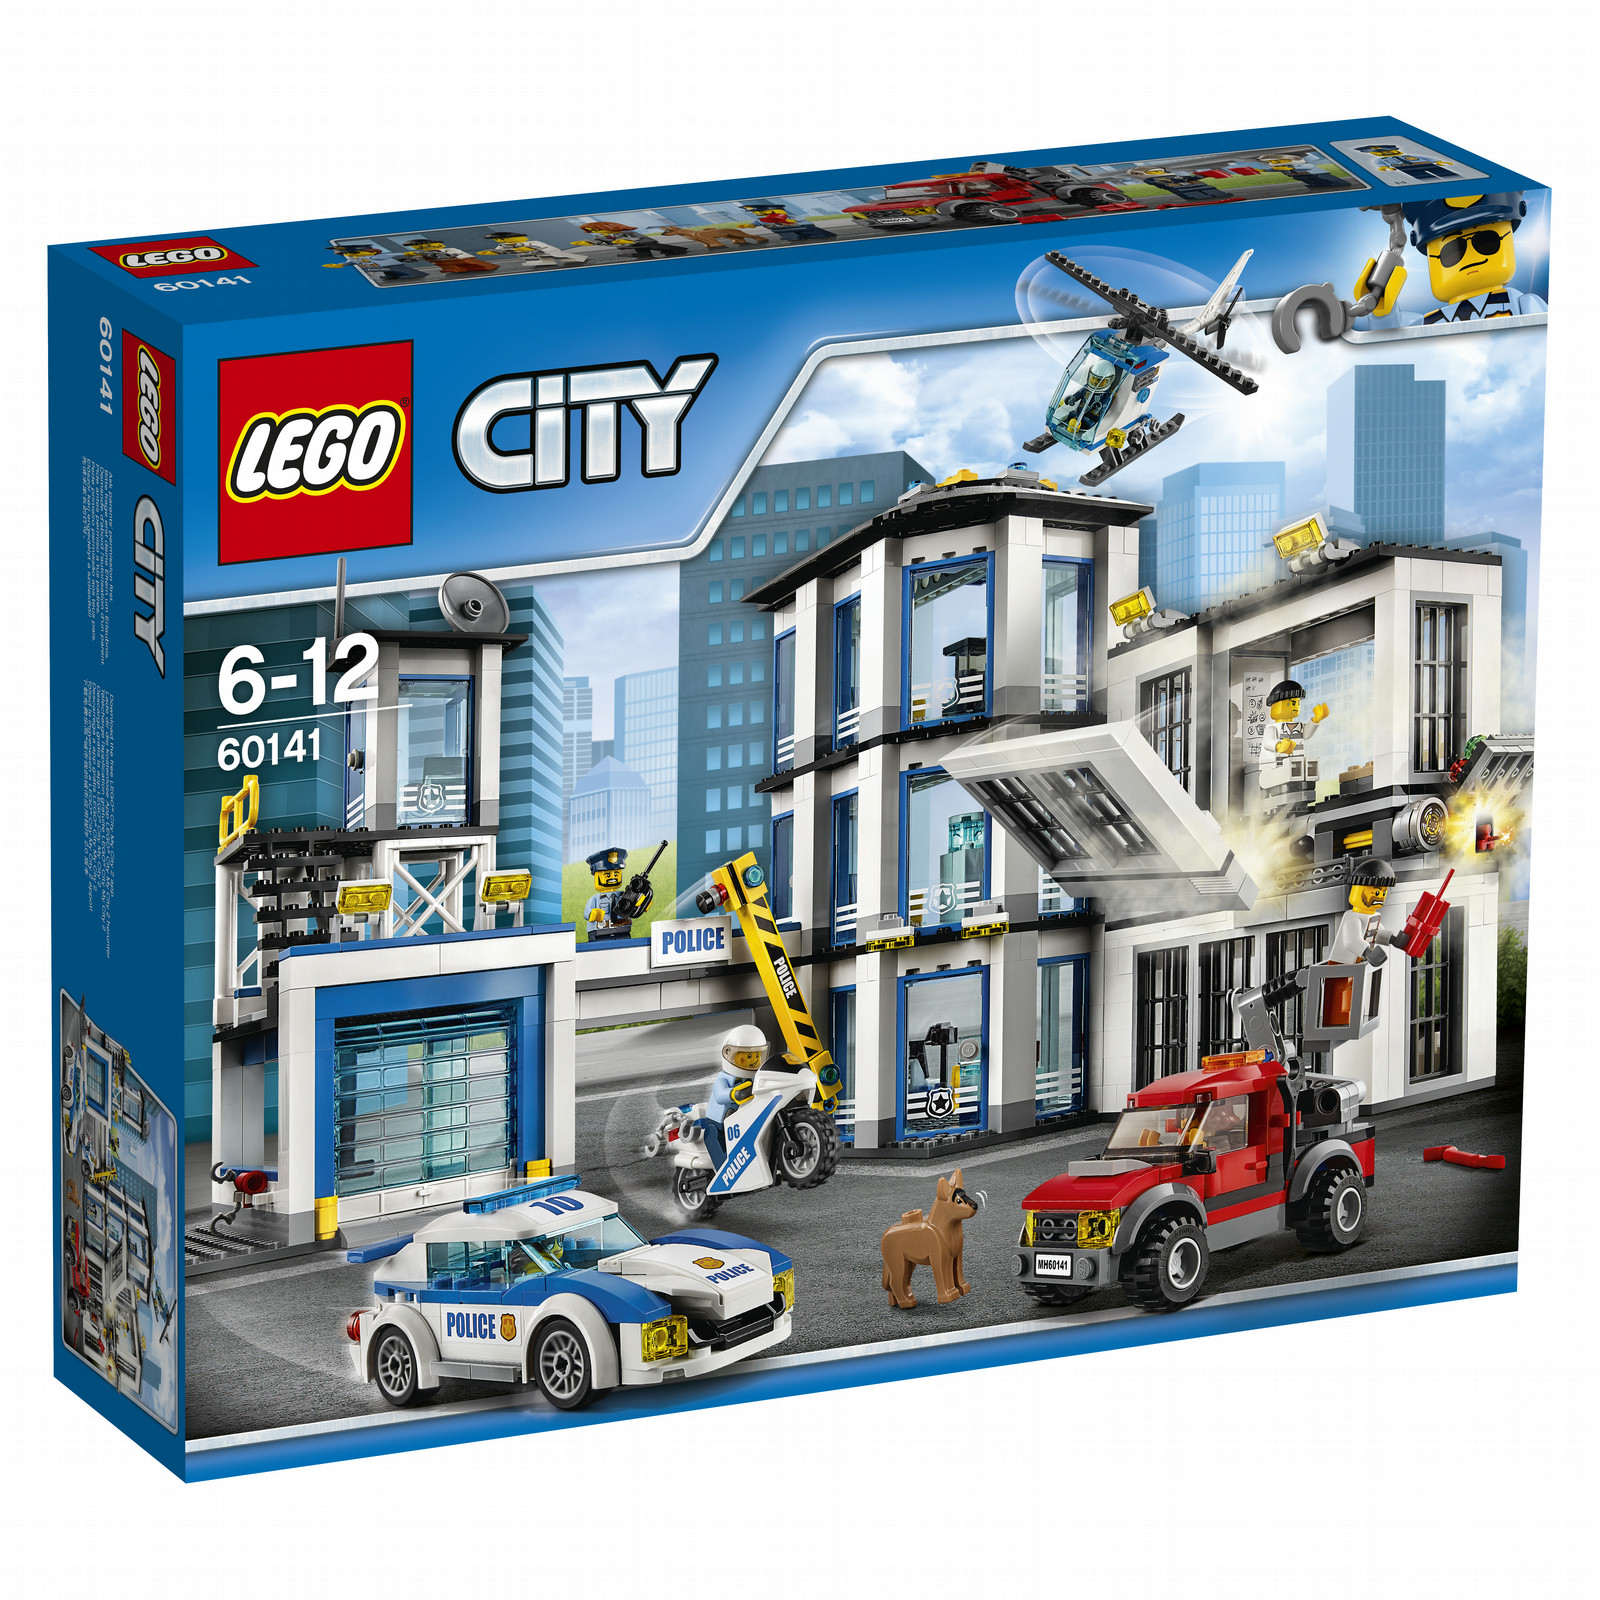 lego city set price